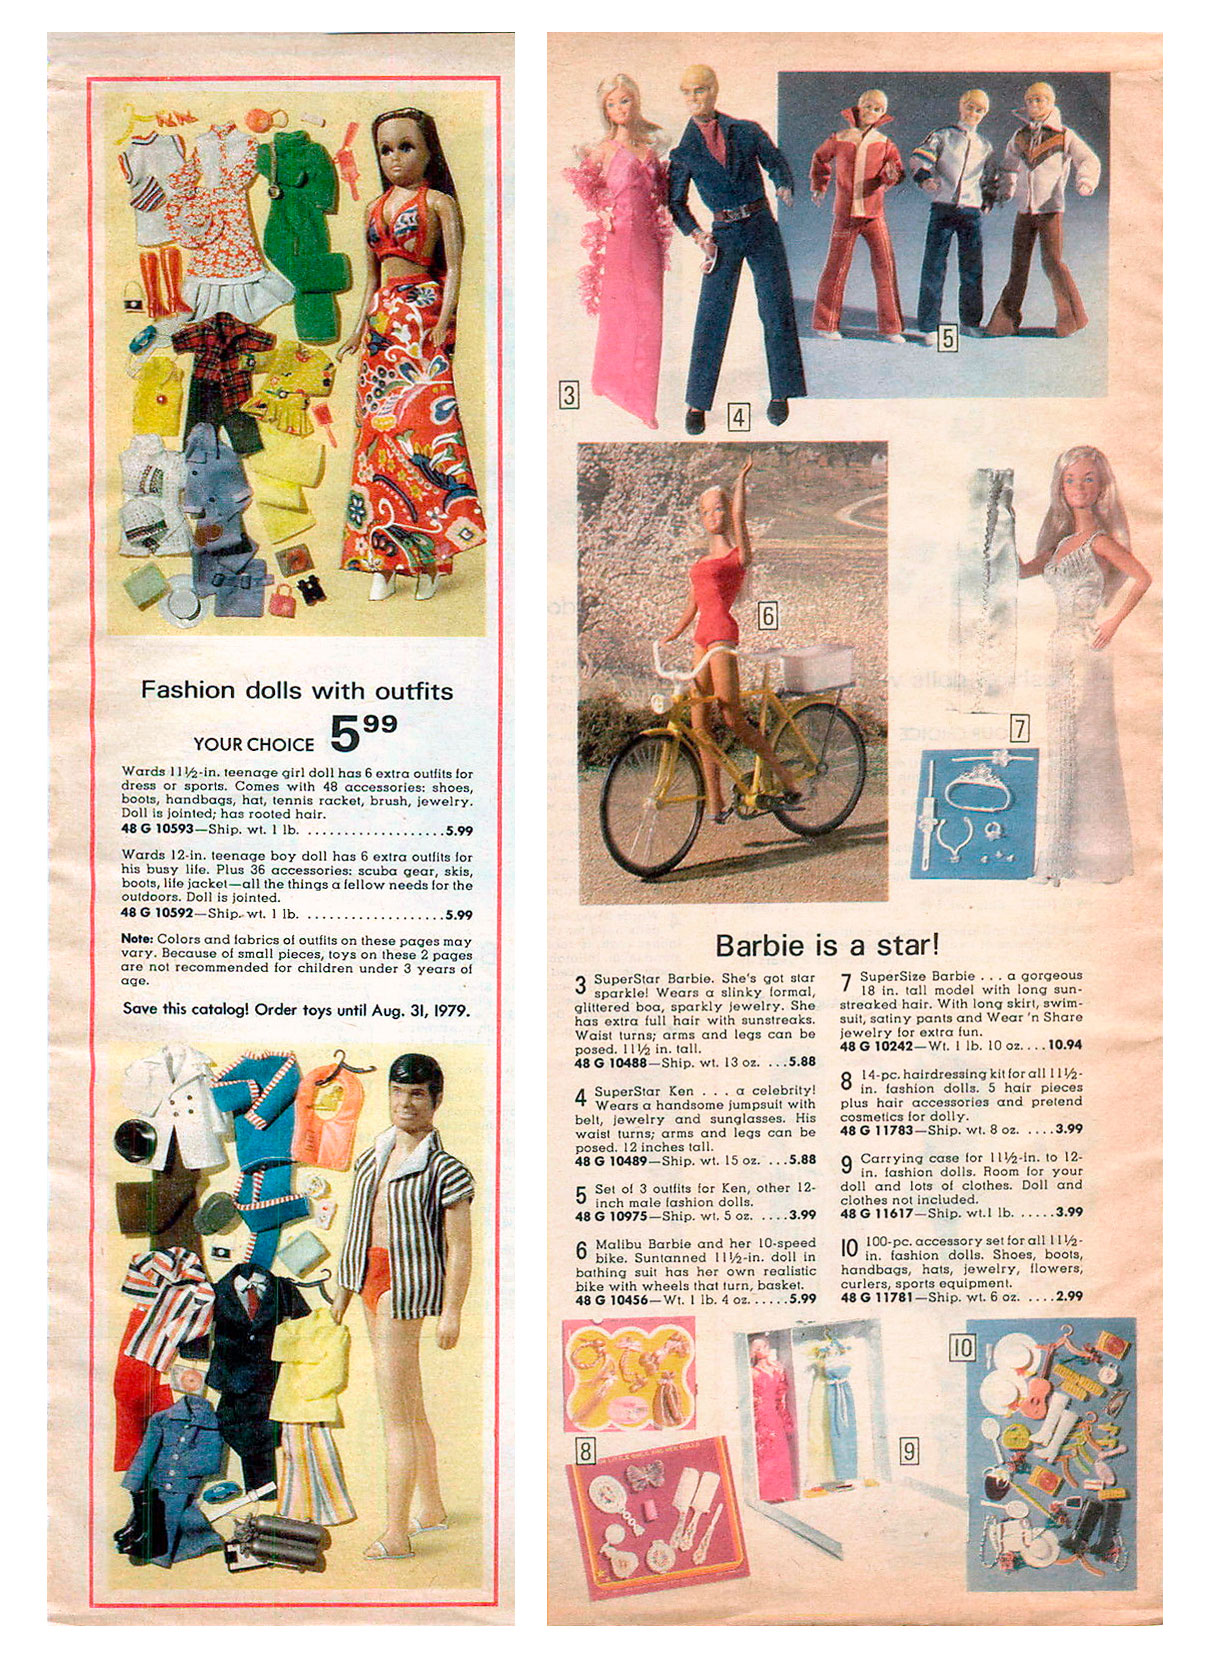 Vintage Mattel 1986 Ma Premiere Barbie Ballerine France